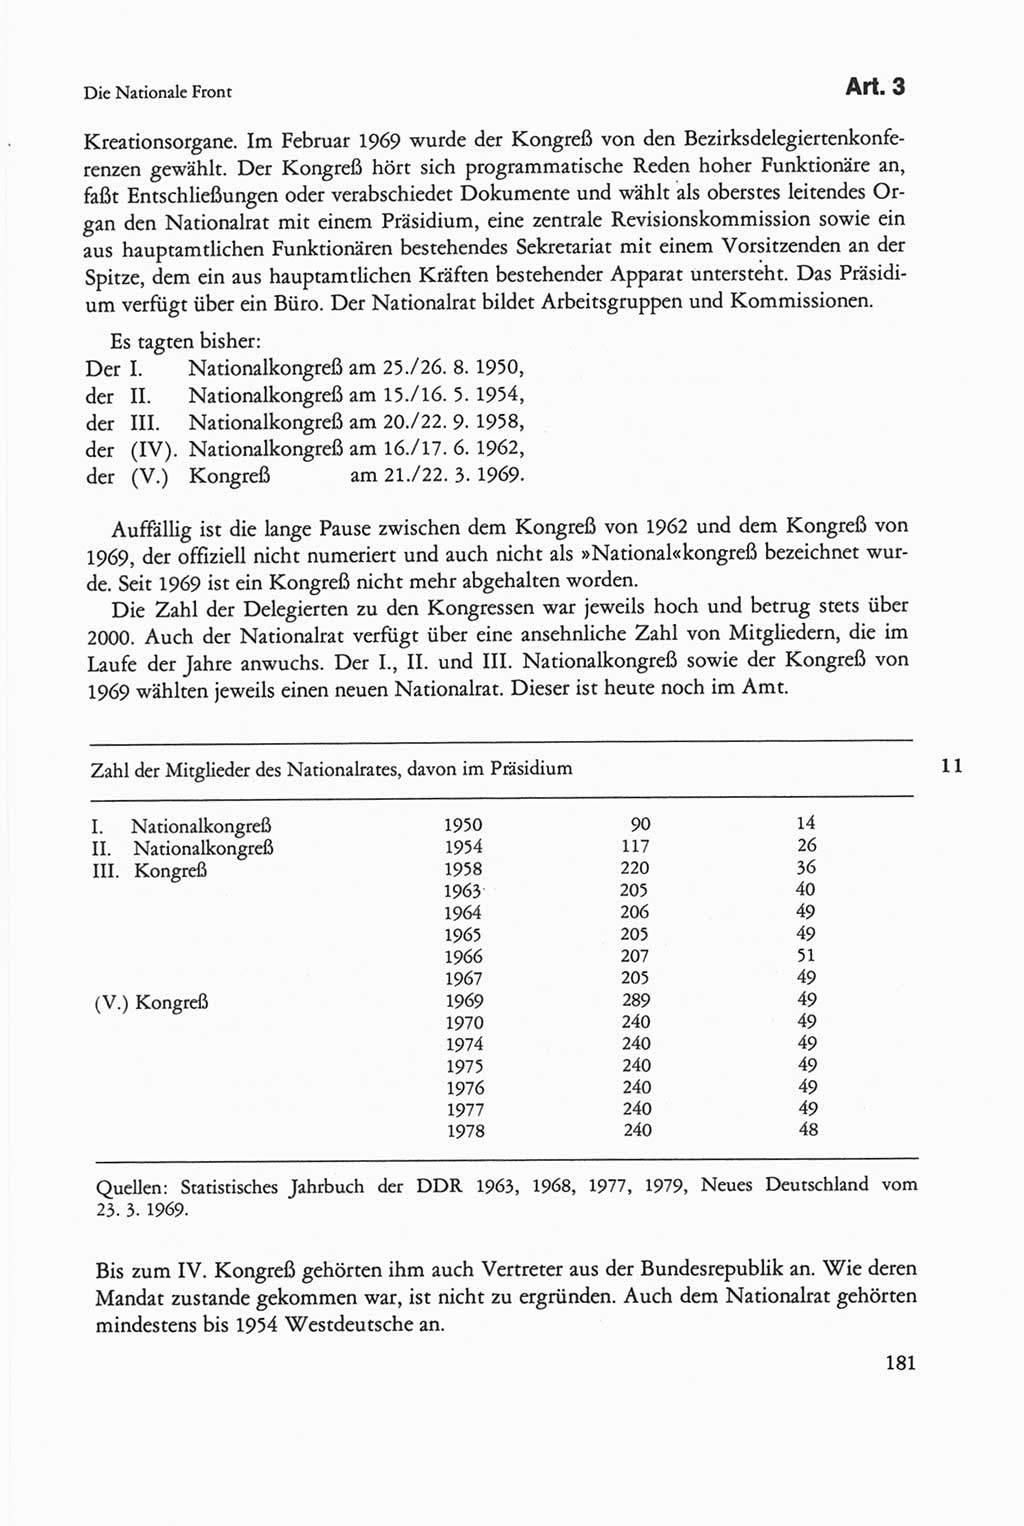 Die sozialistische Verfassung der Deutschen Demokratischen Republik (DDR), Kommentar mit einem Nachtrag 1997, Seite 181 (Soz. Verf. DDR Komm. Nachtr. 1997, S. 181)